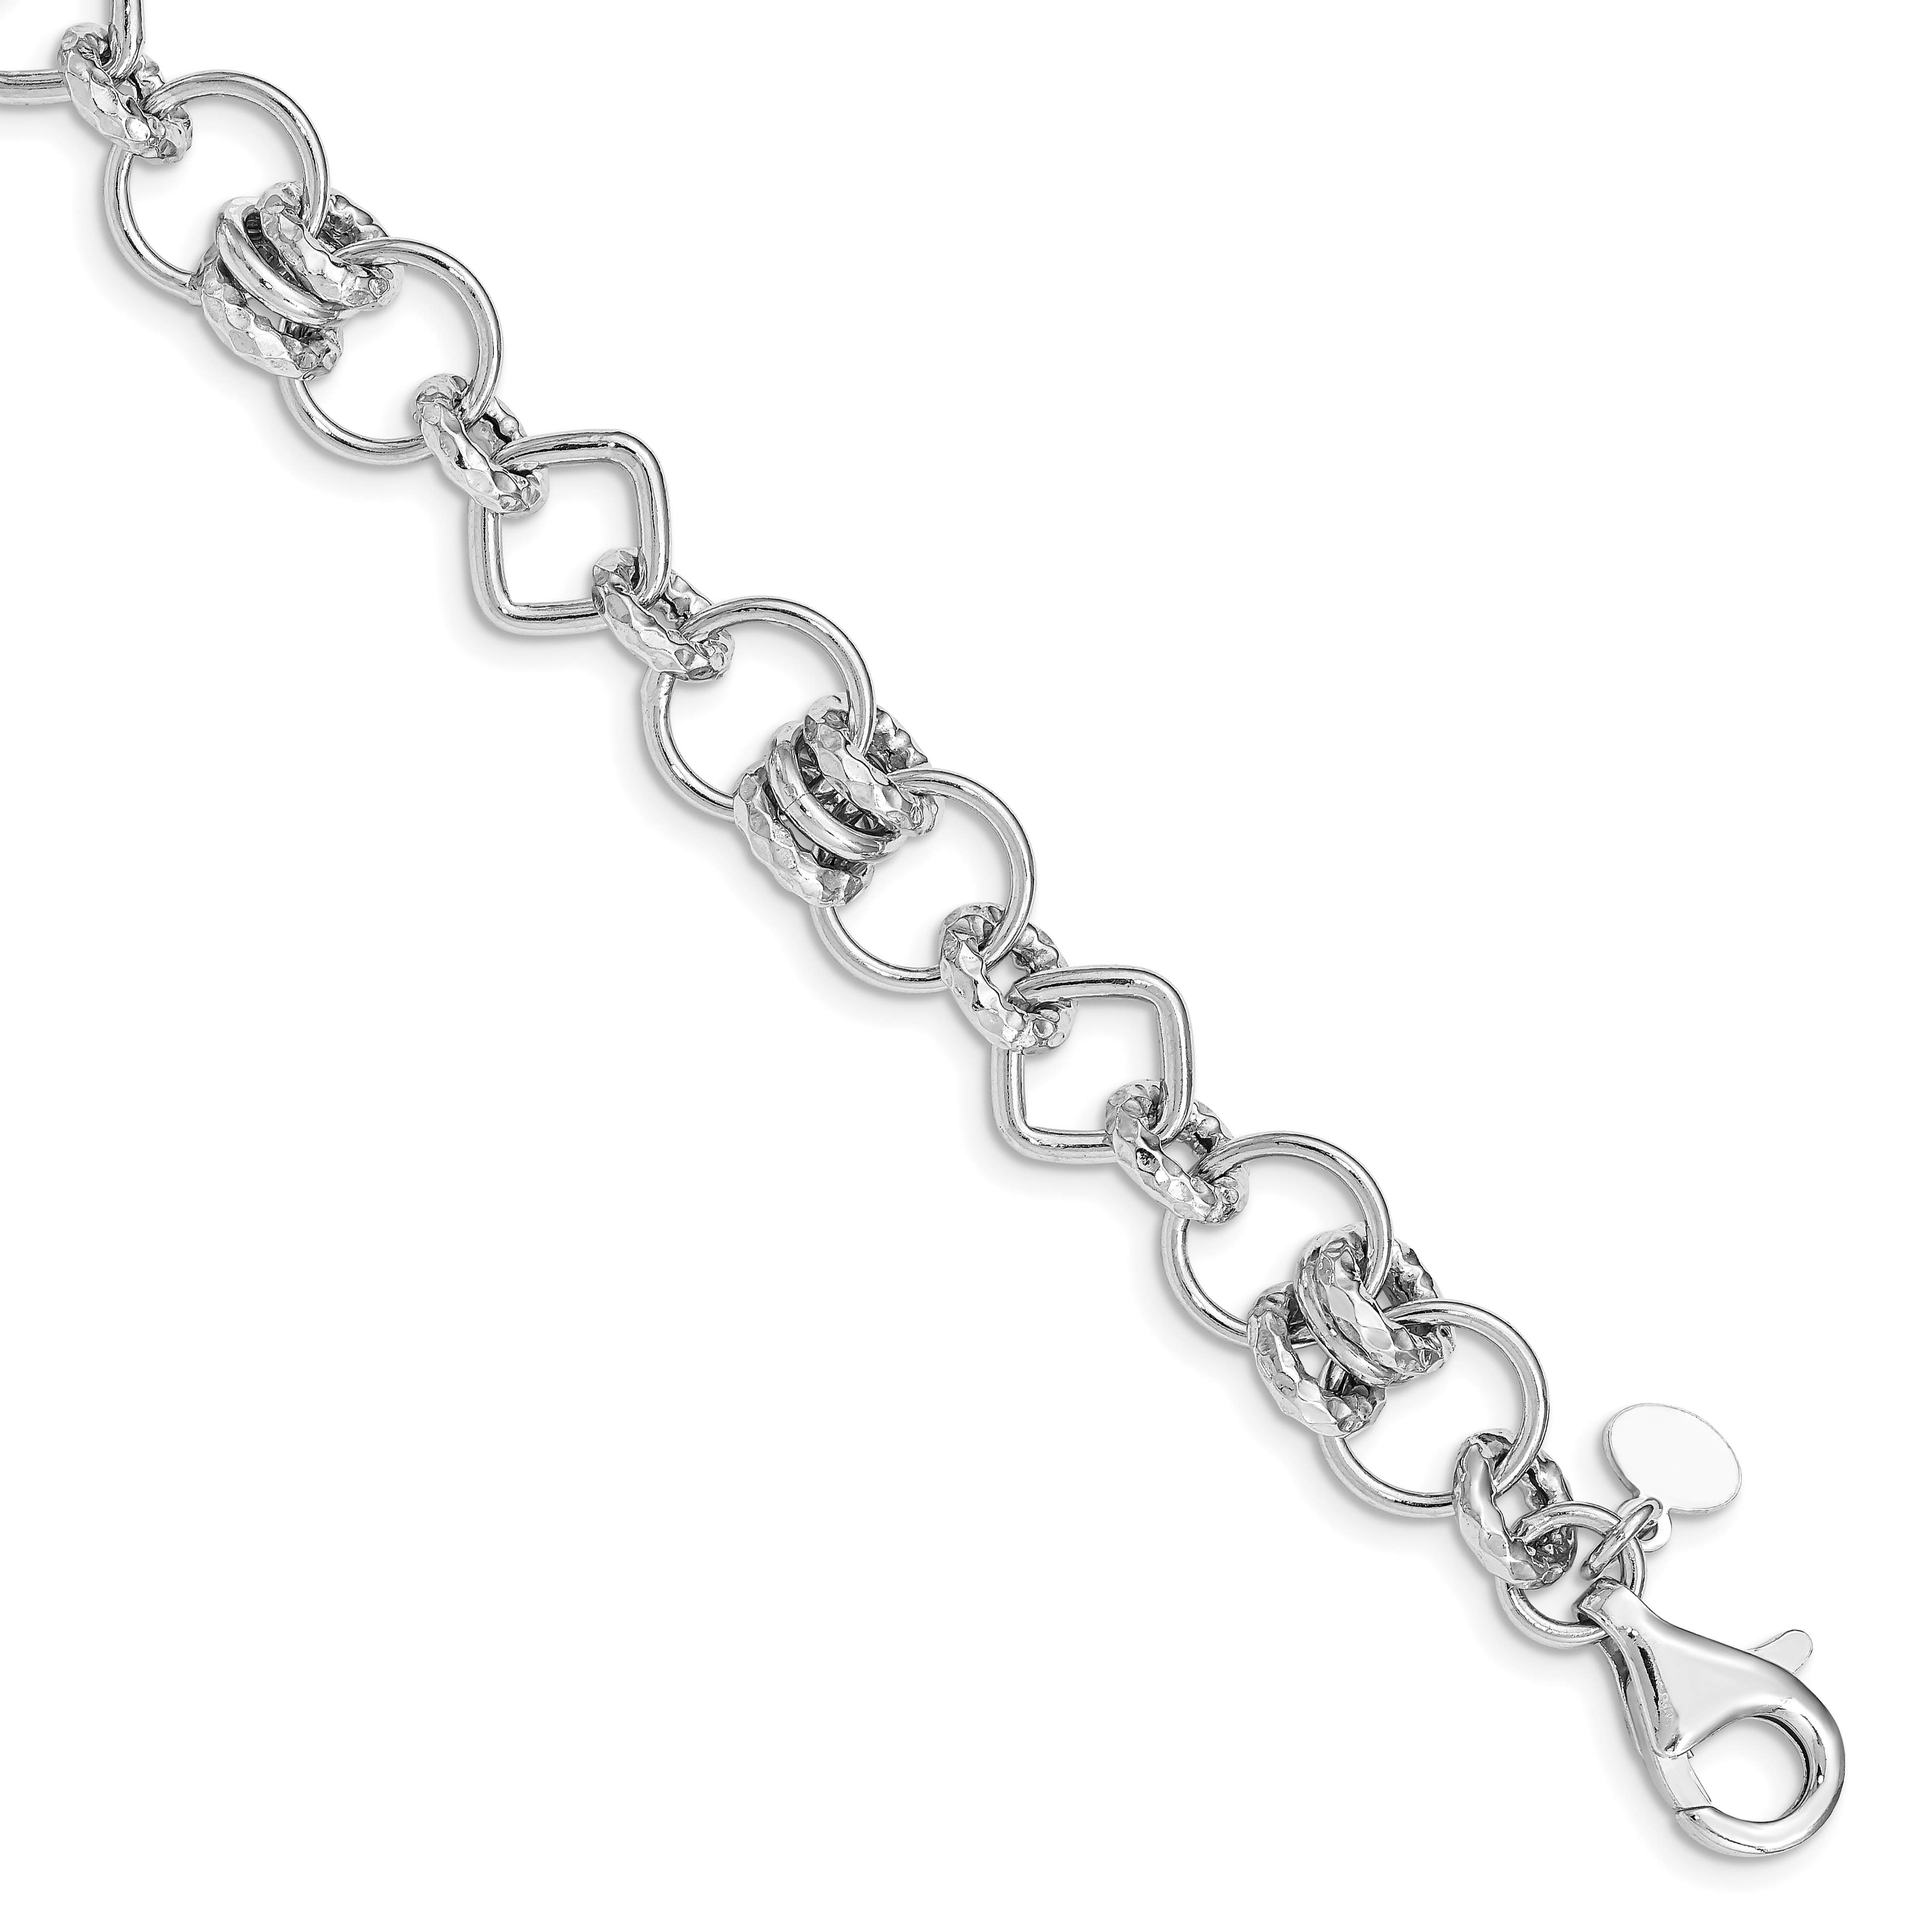 925 Sterling Silver Rhodium-plated Polished Fancy Link Bracelet 7.75